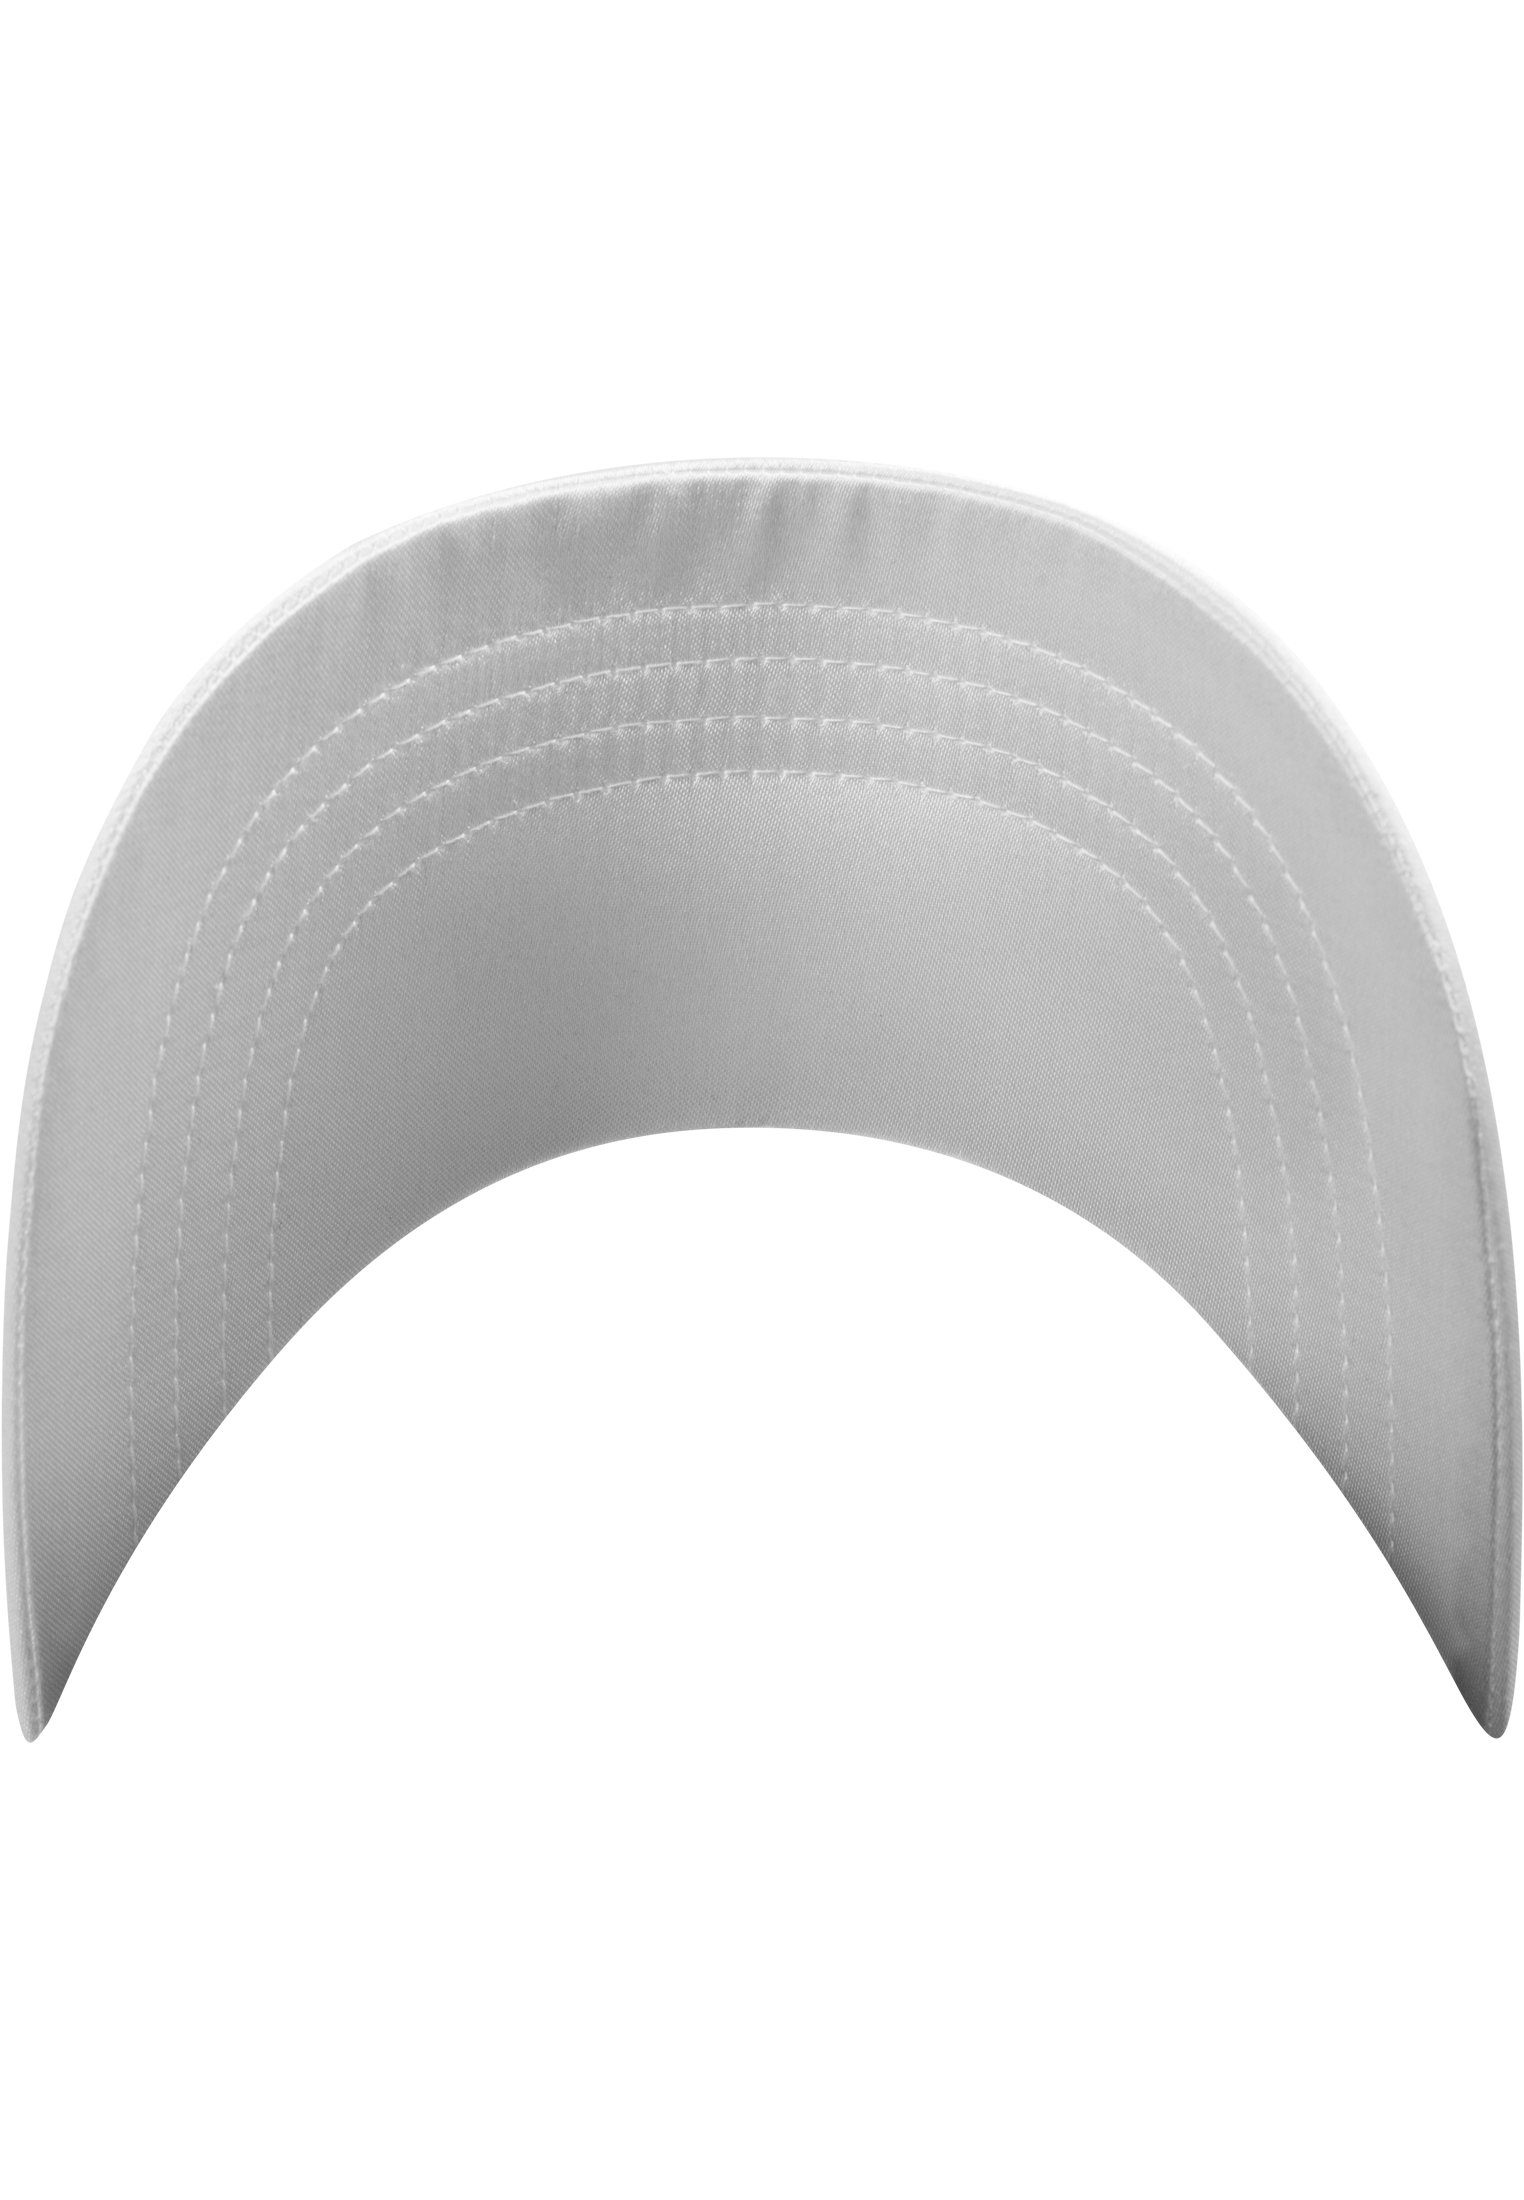 Accessoires Low Cap Flex white Flexfit Satin Profile Cap